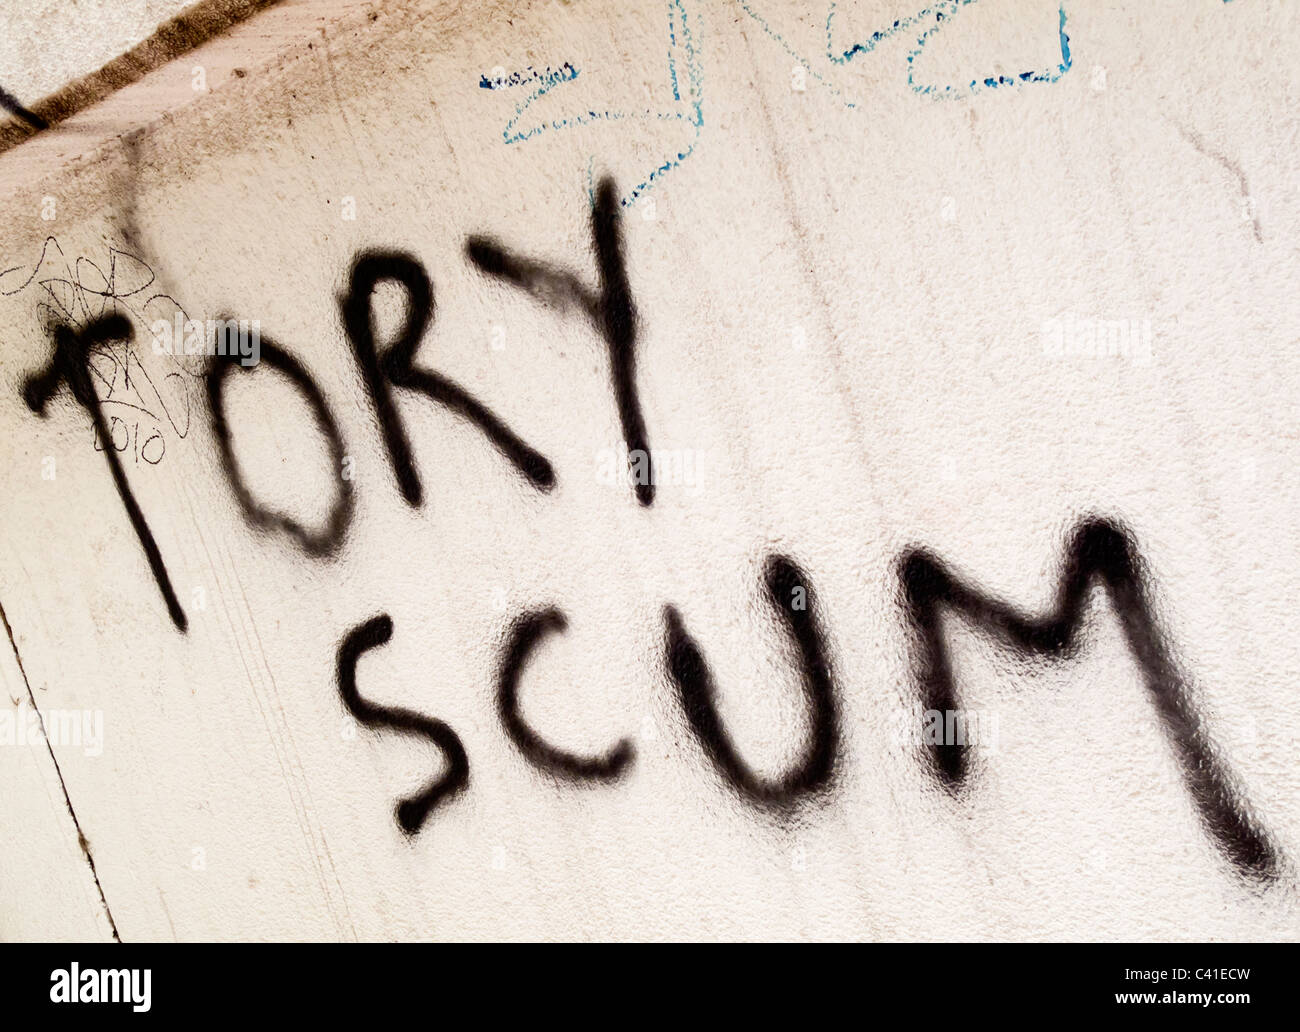 Anti écume conservateur conservateur spray graffiti peint sur un mur en Grande-Bretagne Banque D'Images